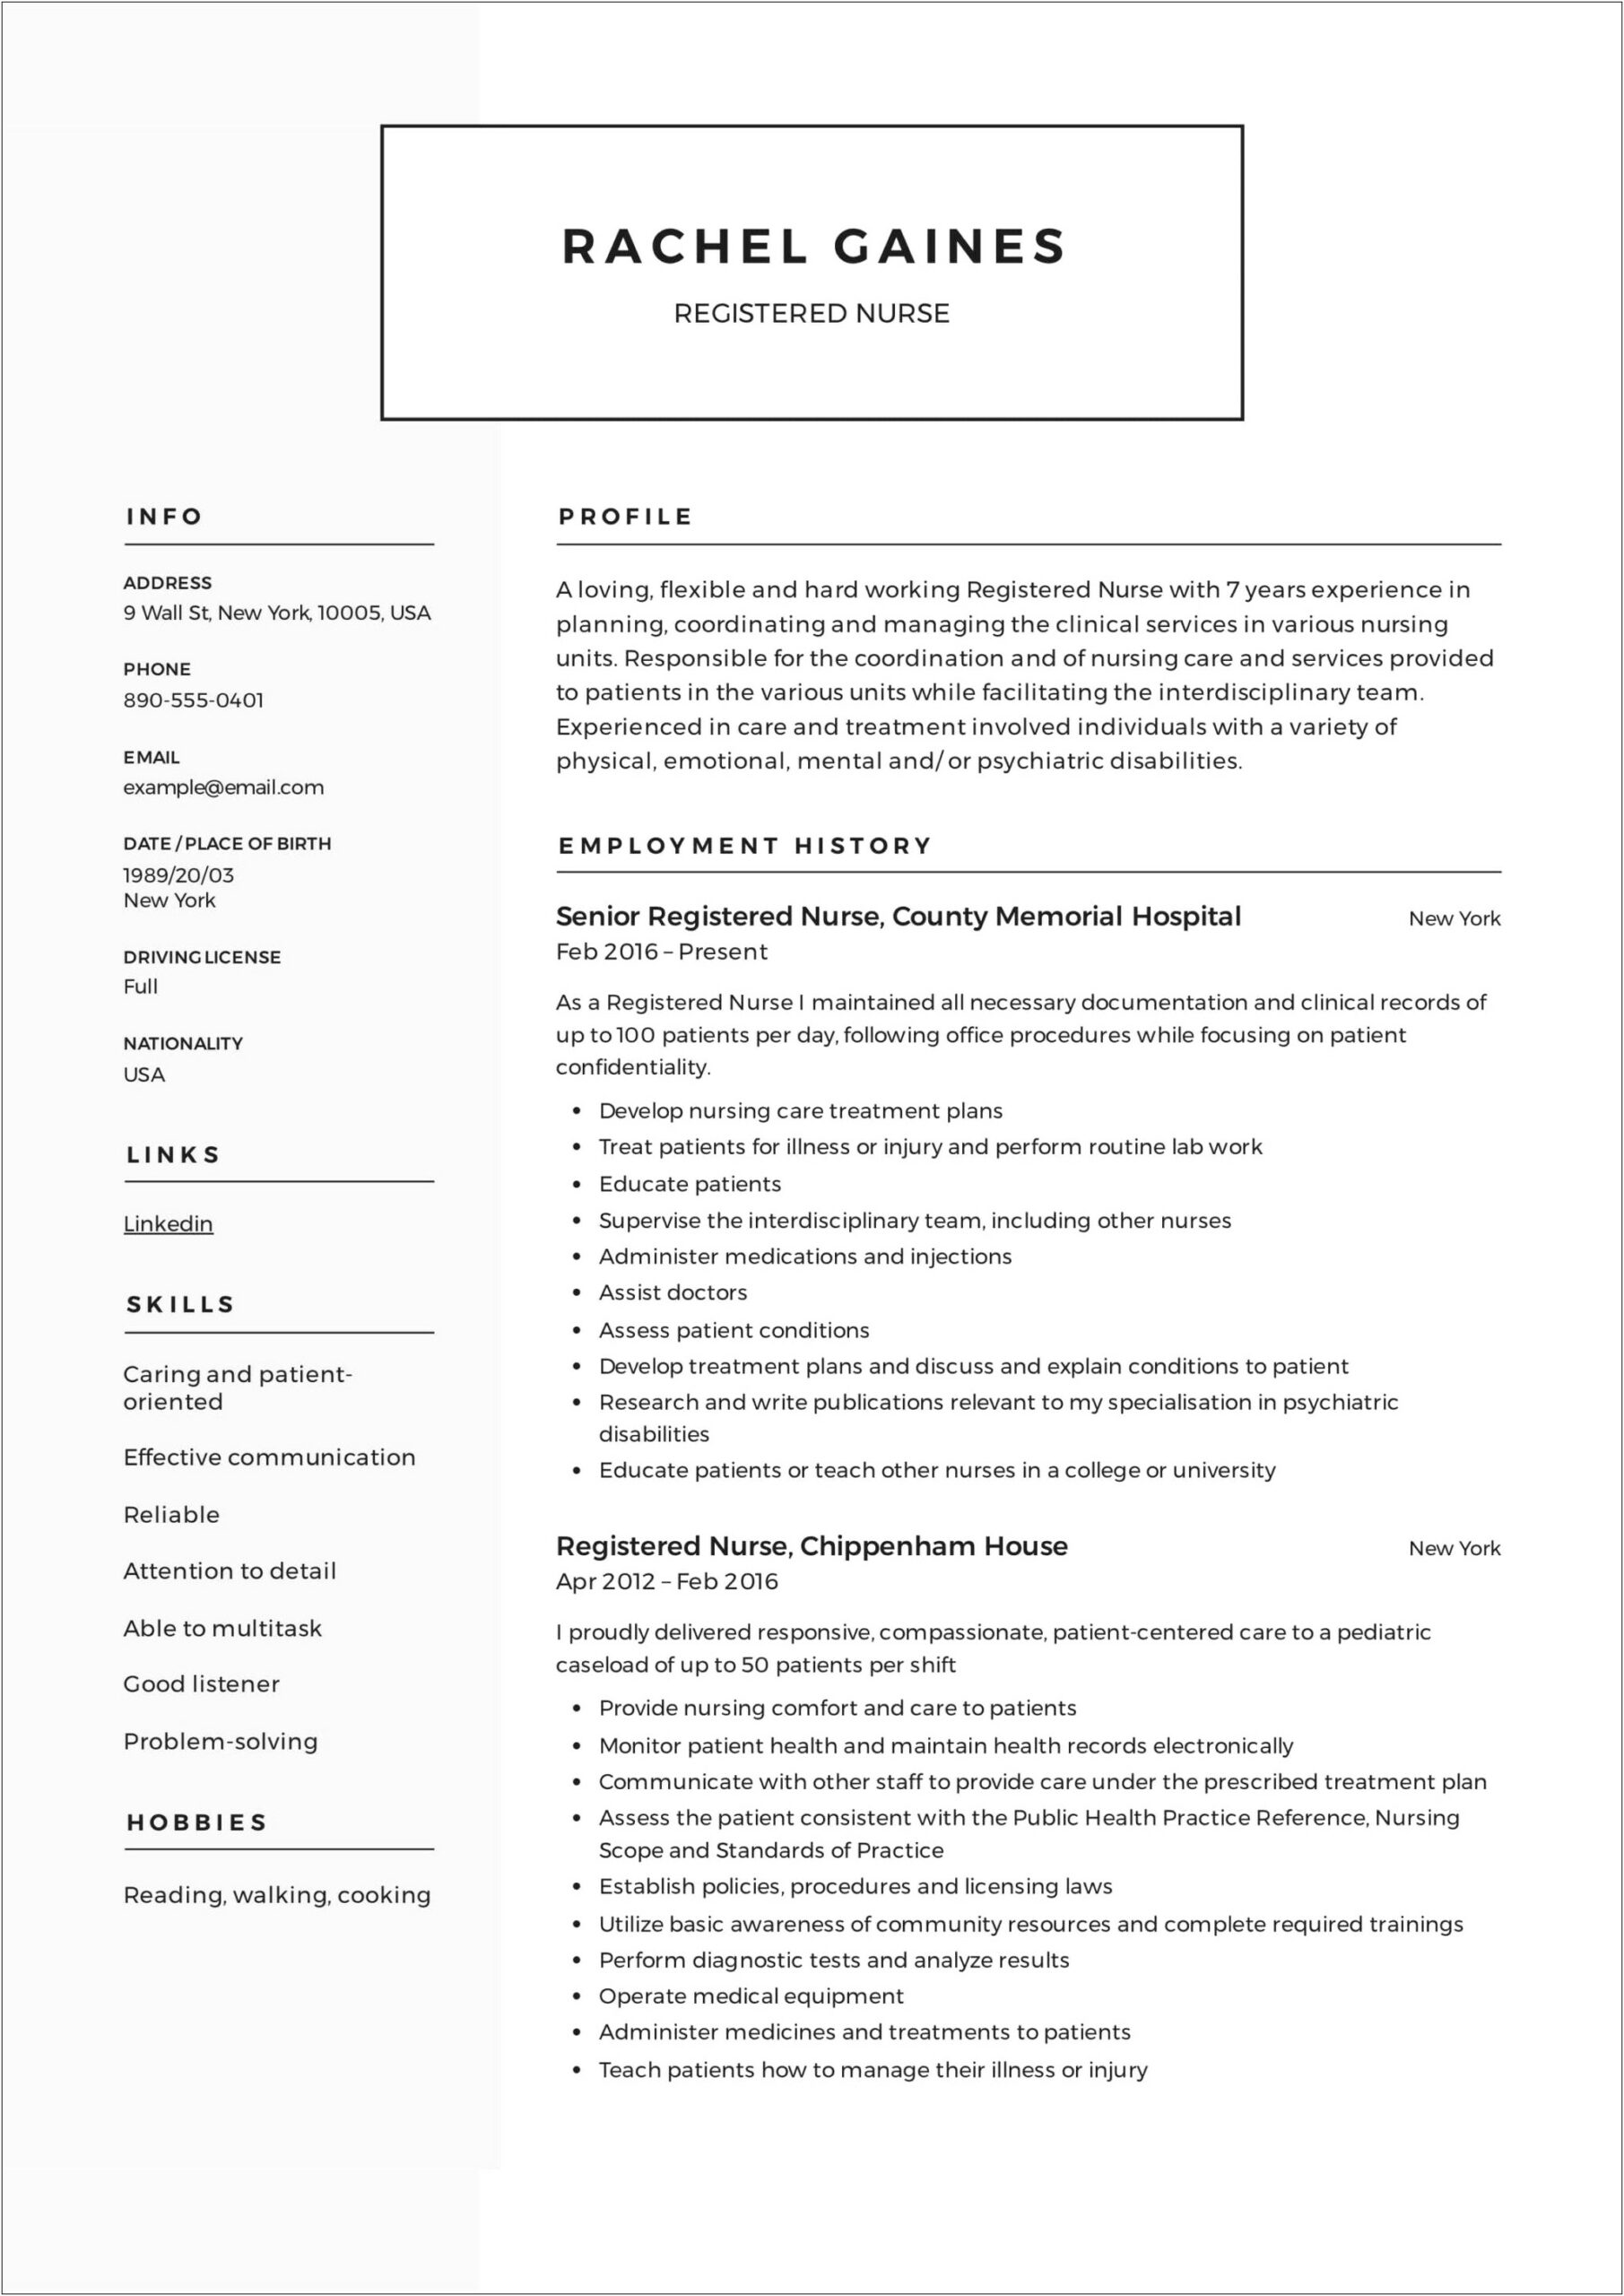 Resume Job Description For Registered Nurse